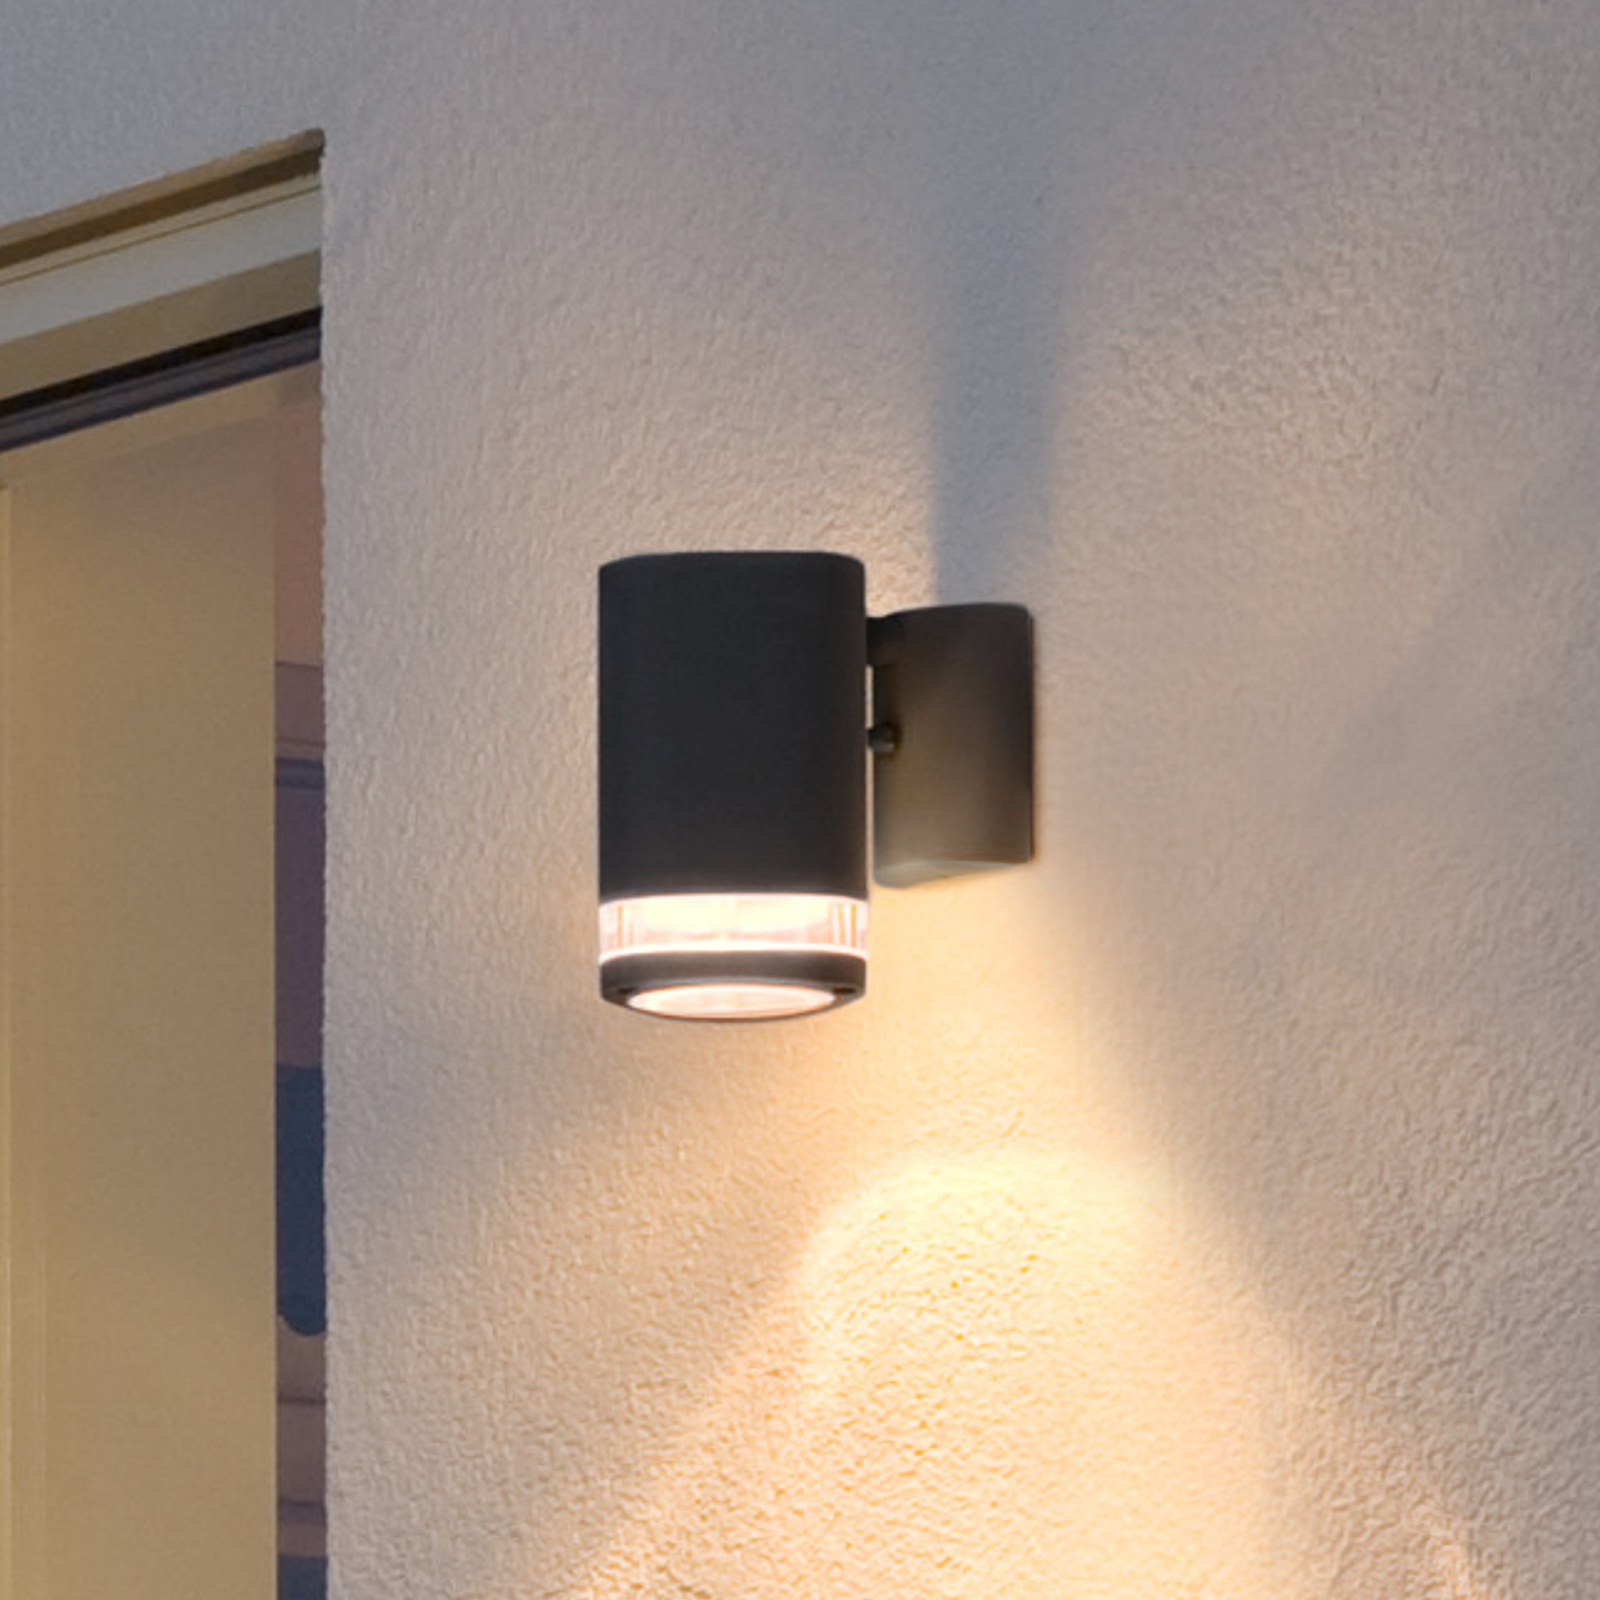 Buitenwandlamp Modena met sleuf, 1-lamps zwart